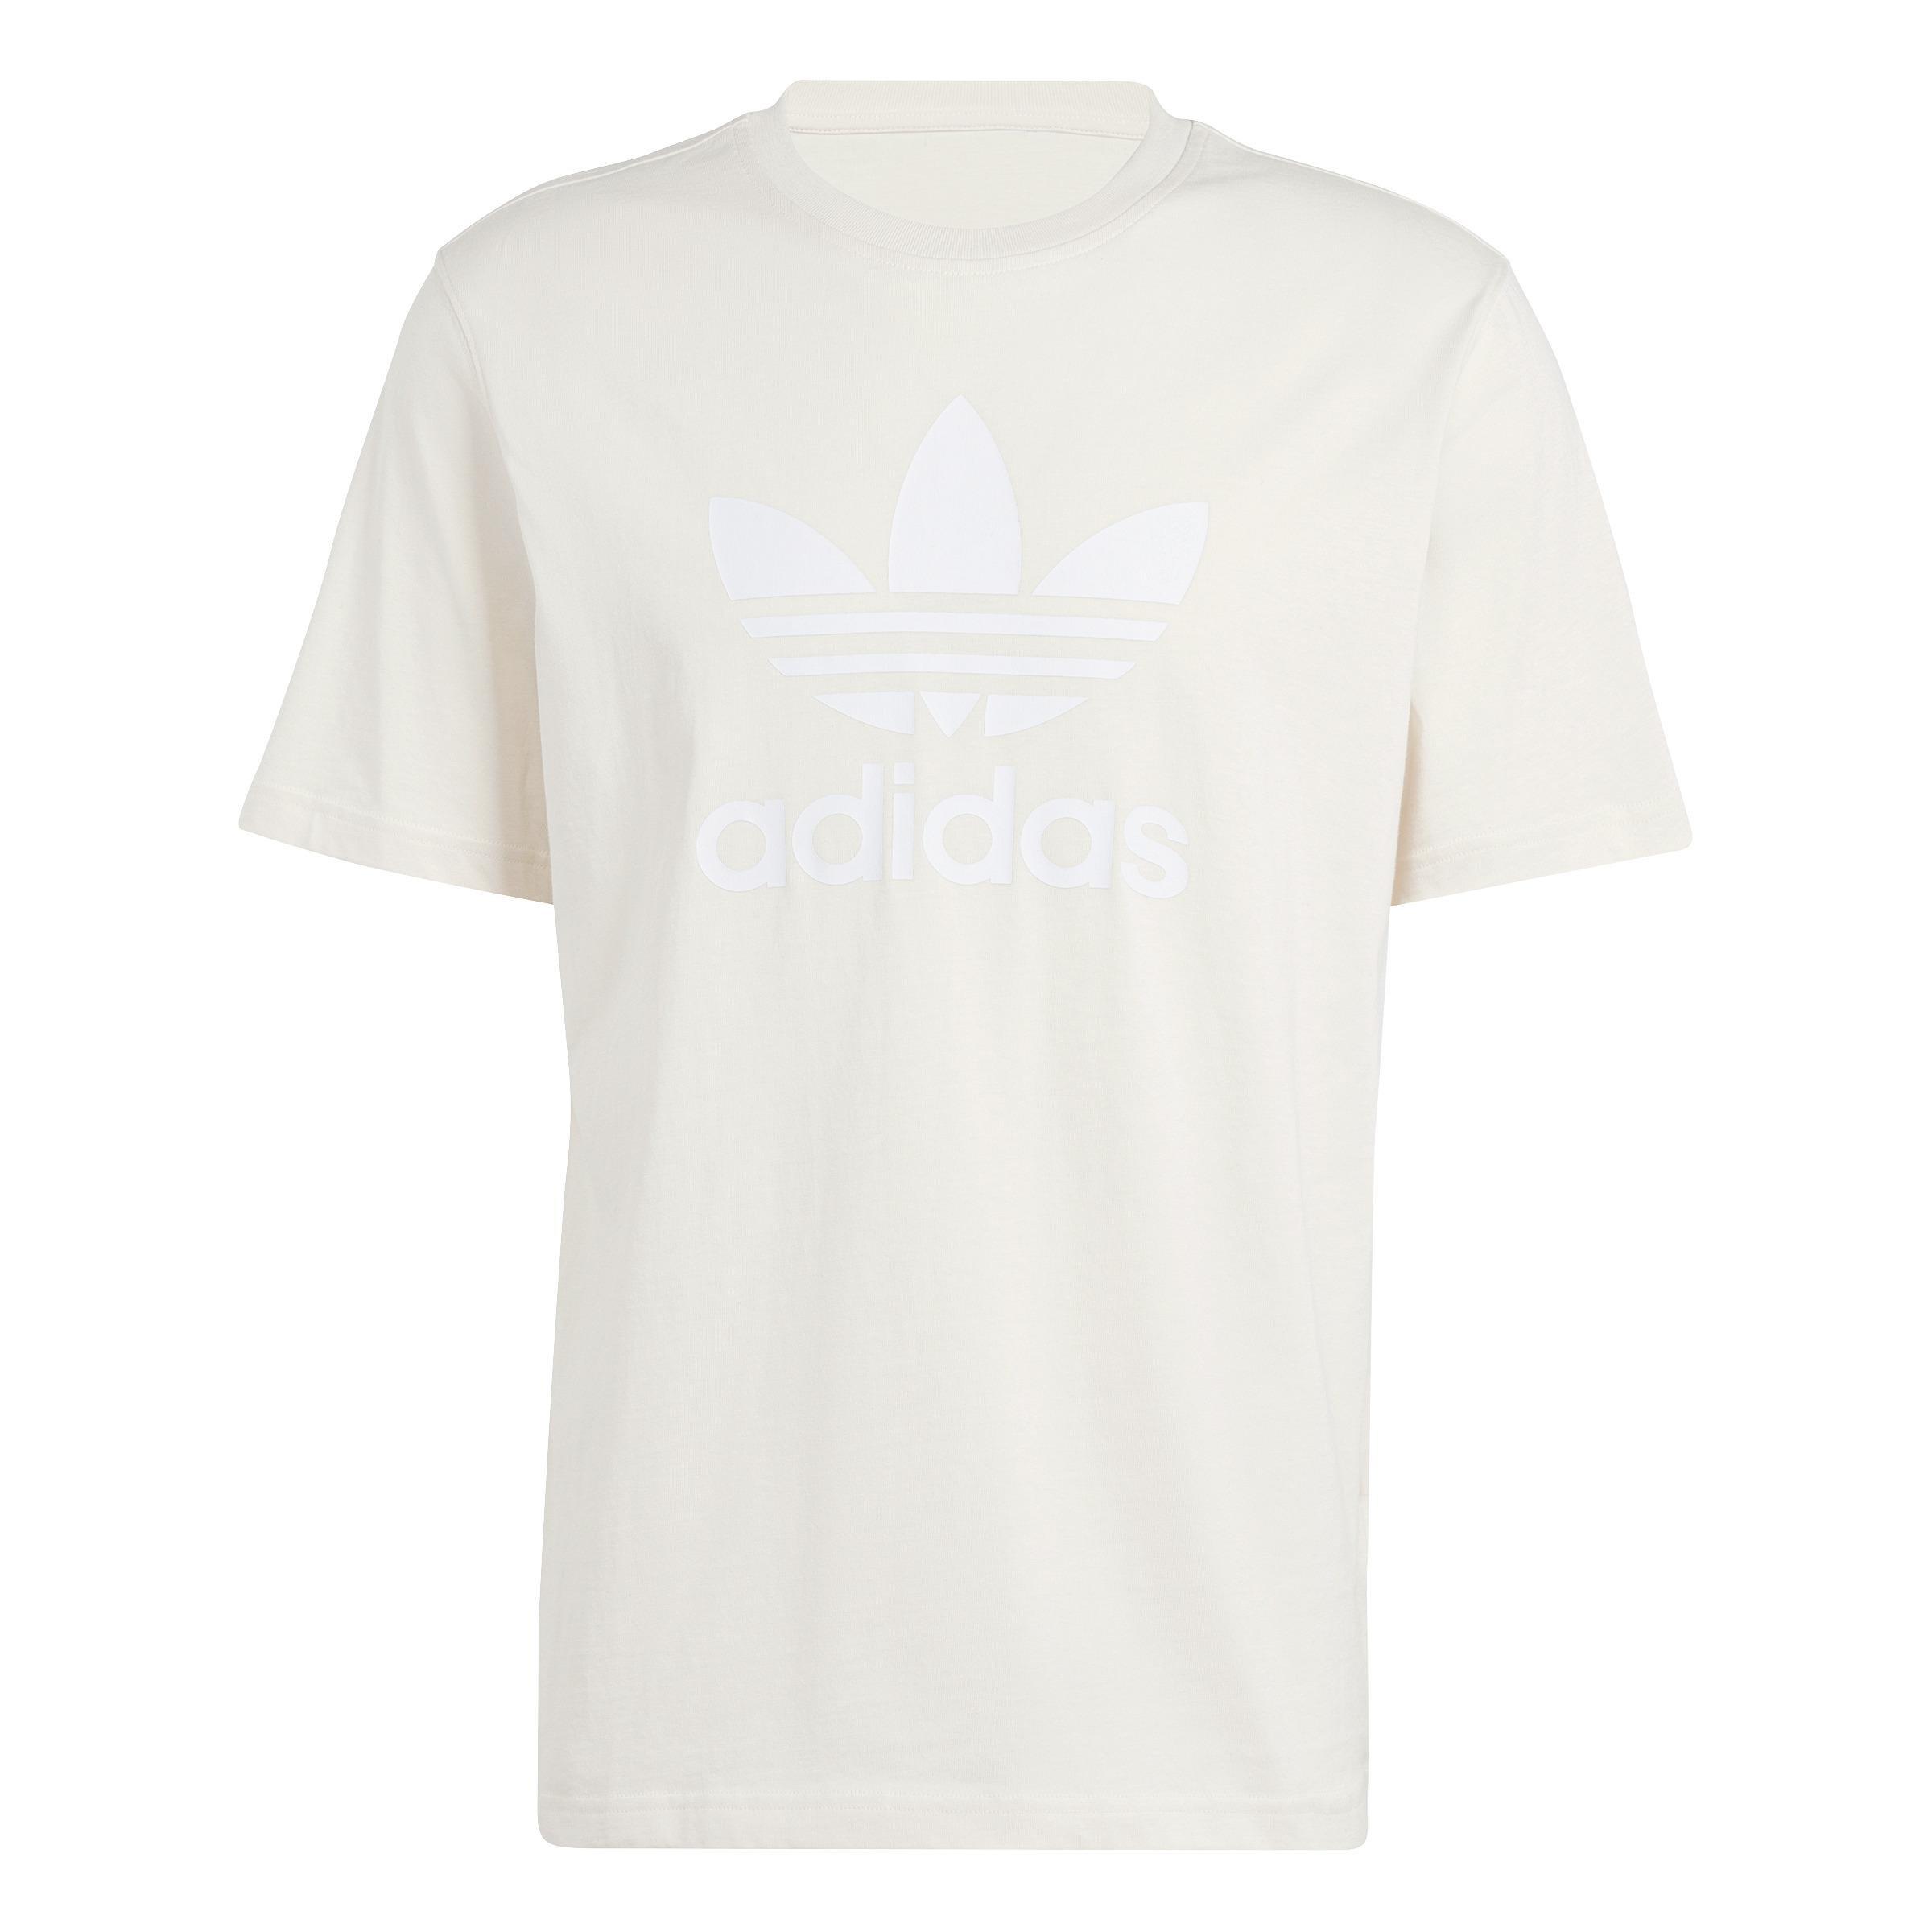 adidas - Men Adicolor Trefoil T-Shirt, White